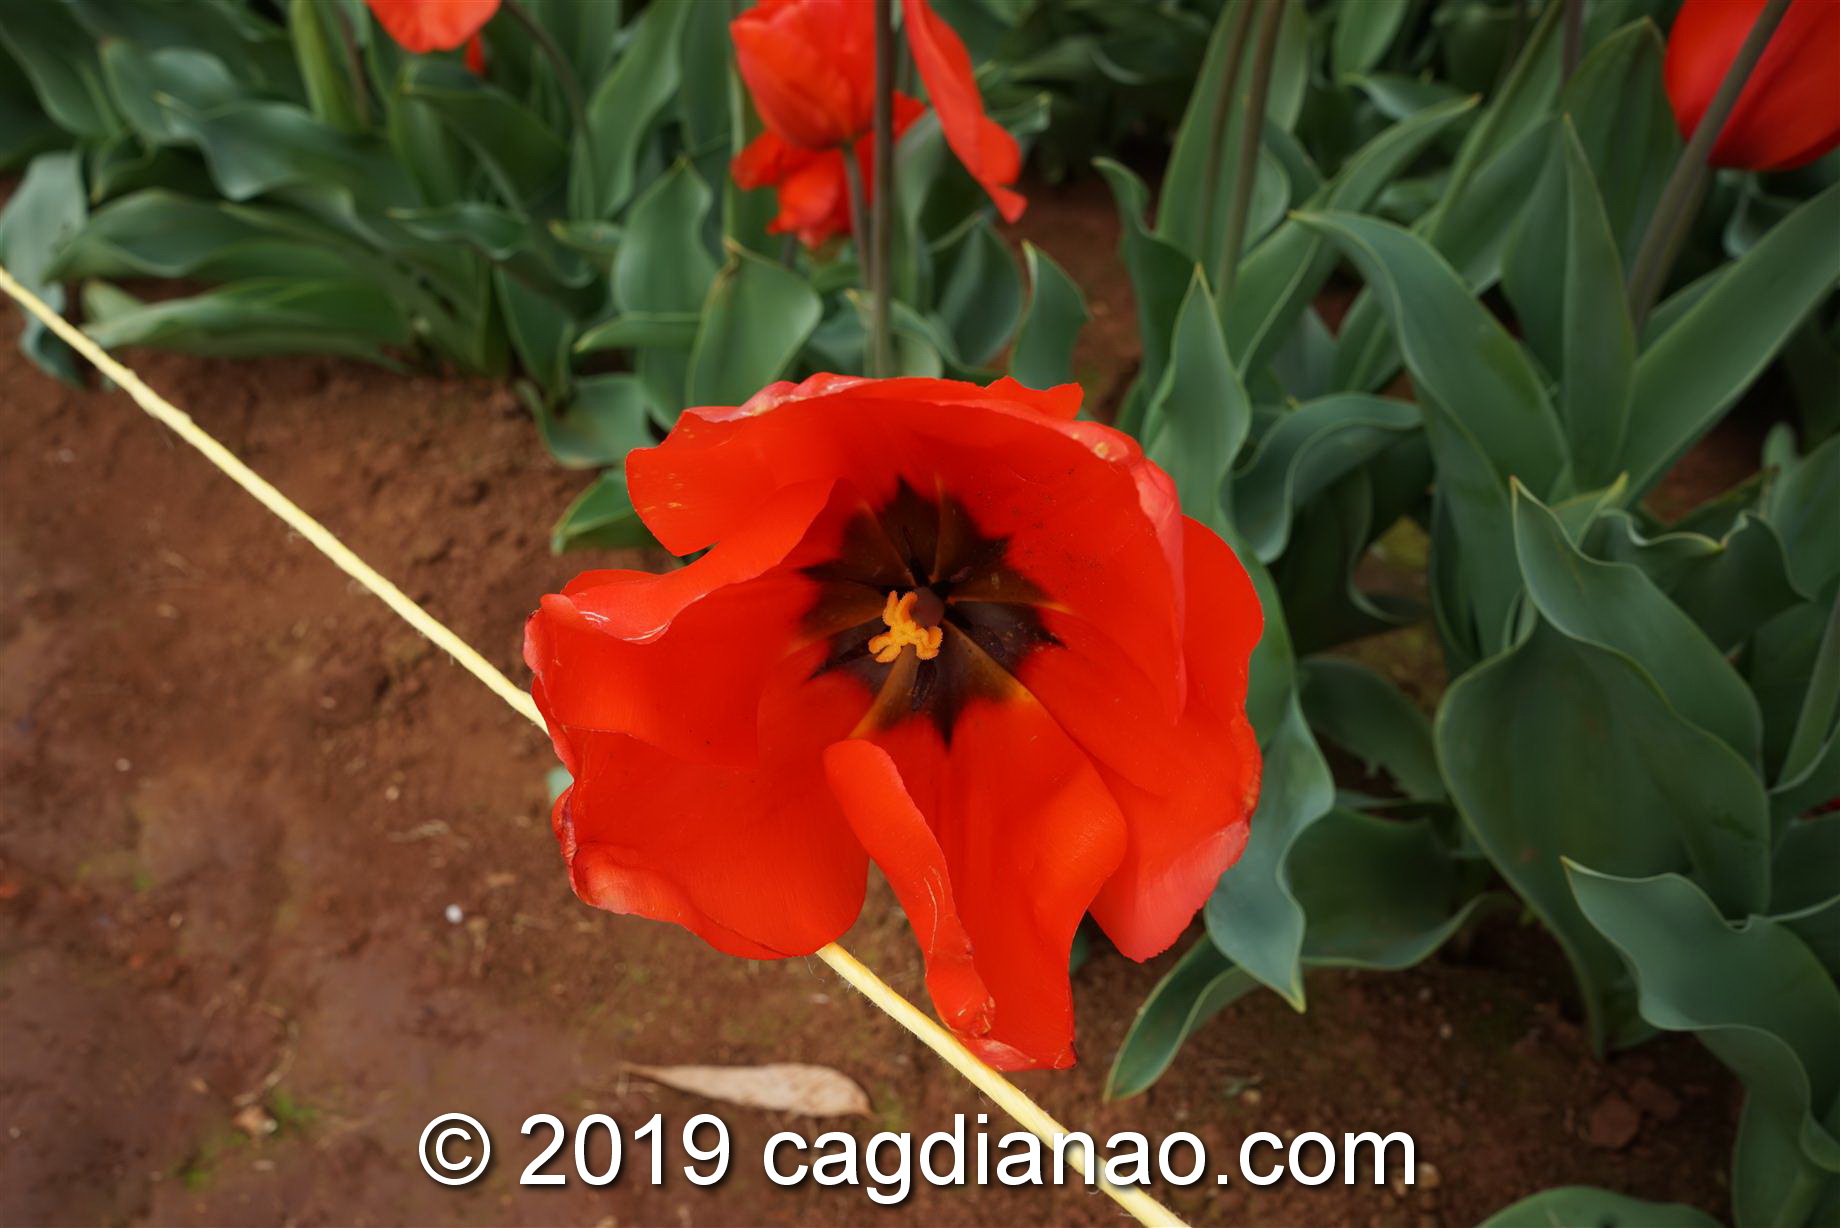 Tessalaars Tulip Farm -September 30 2019